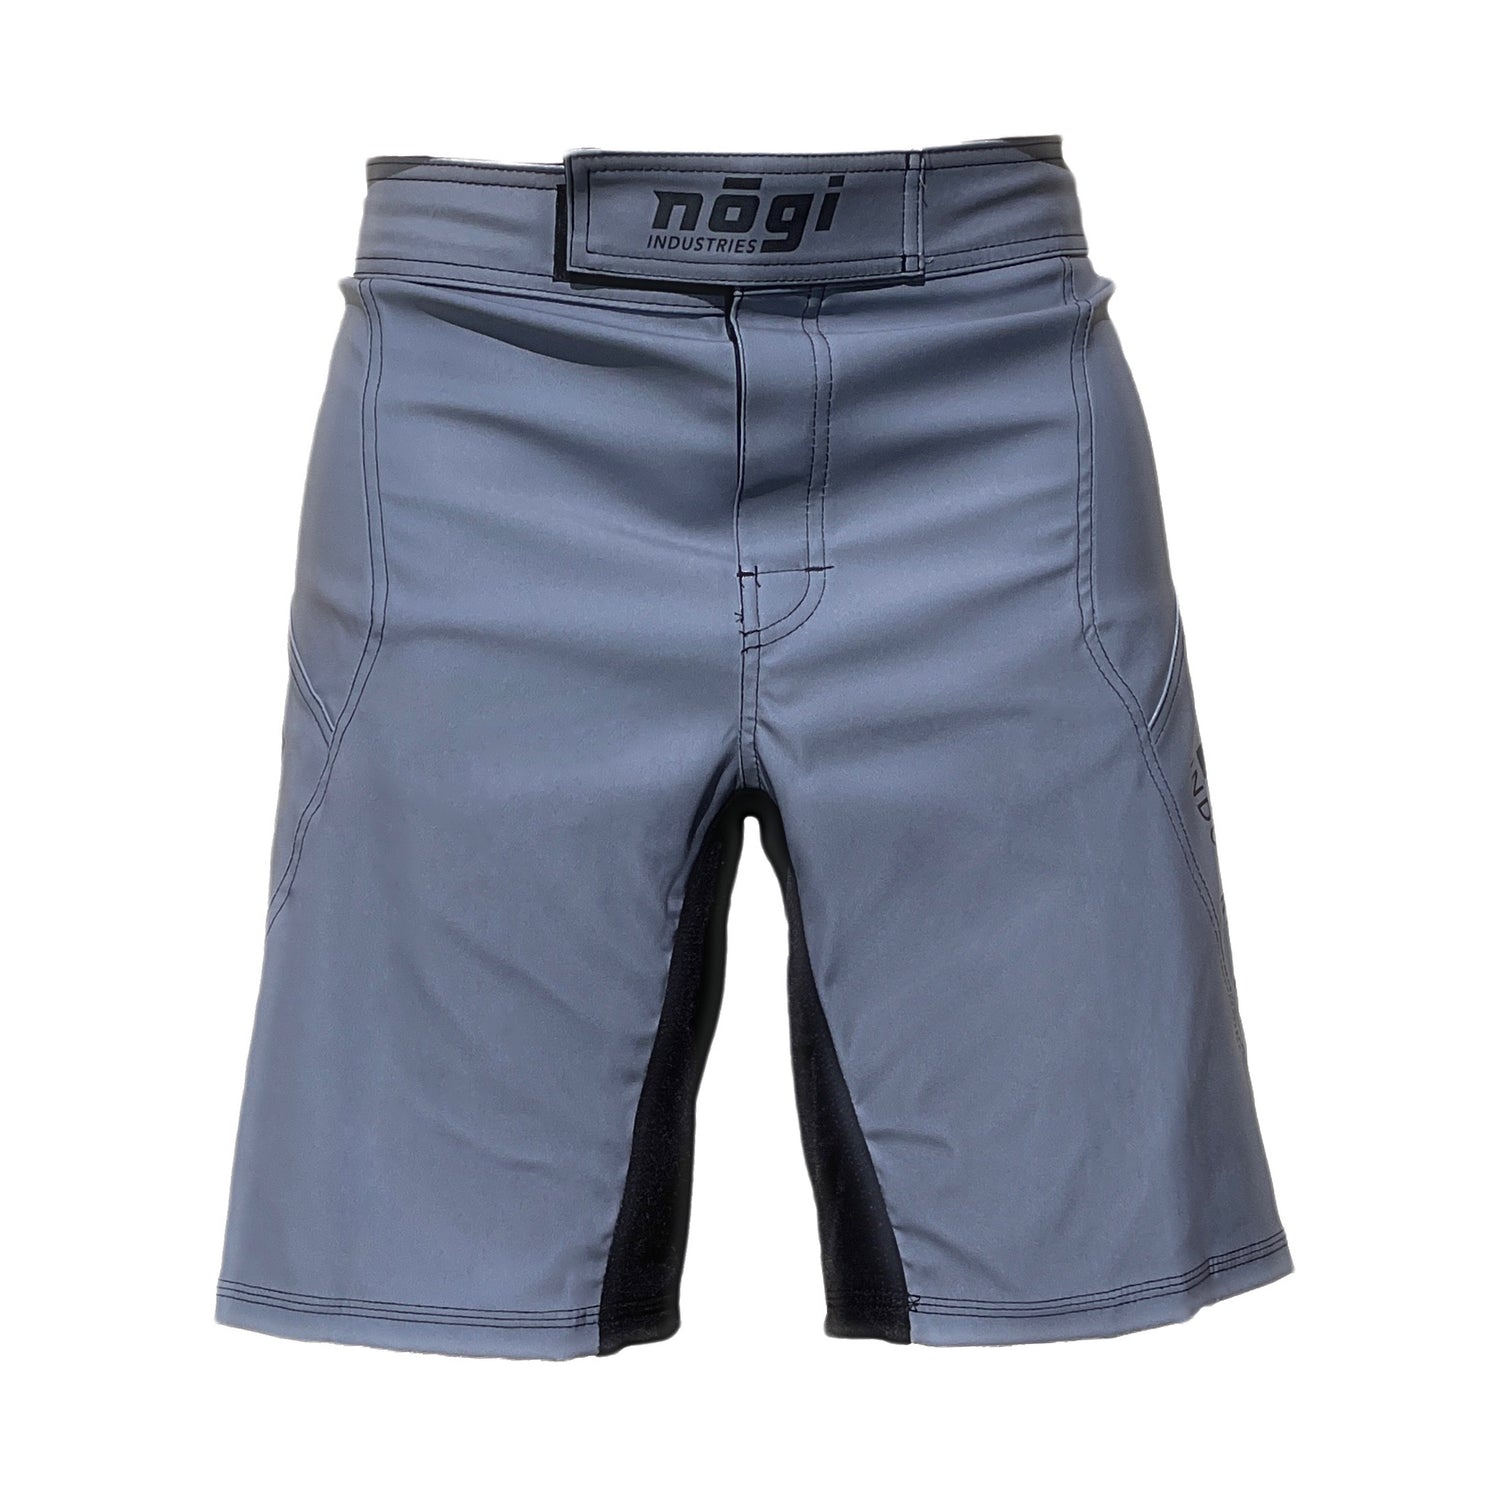 Pantalones cortos de lucha Phantom 4.0 - Gris clásico de Nogi Industries - HECHO EN EE. UU.